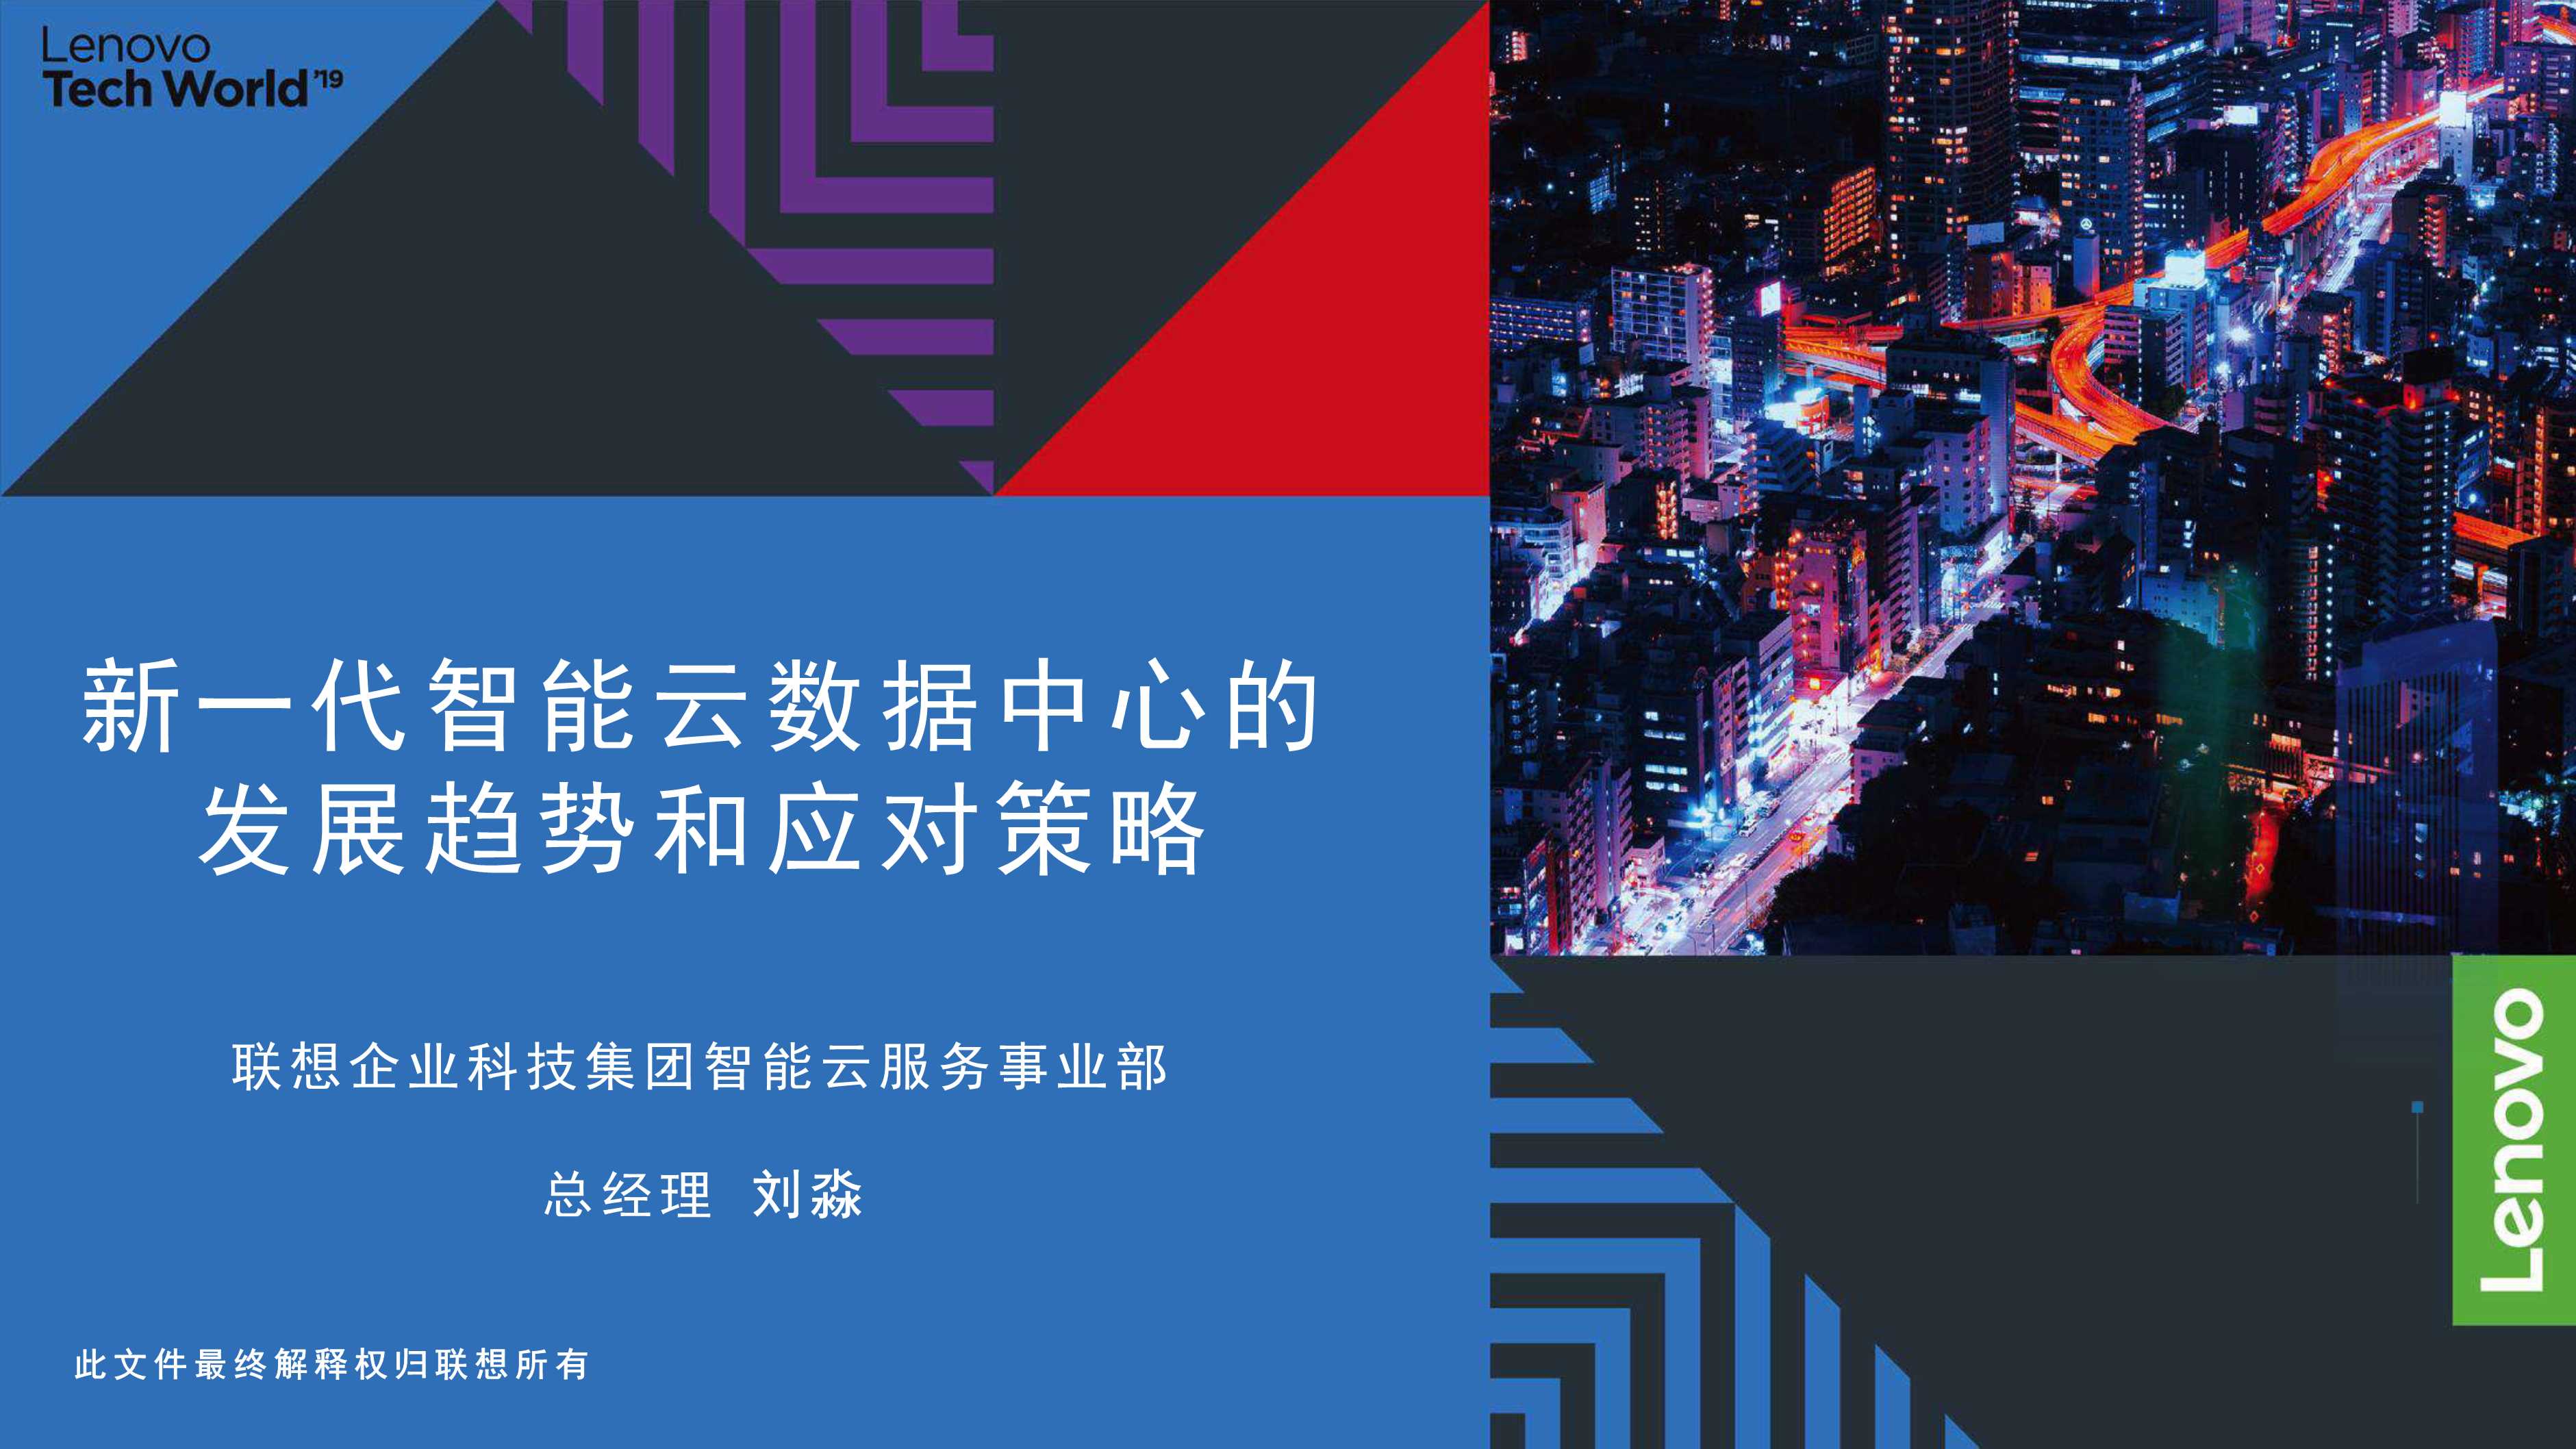 刘淼：新一代智能云数据中心的发展趋势和应对策略-2019.12-18页